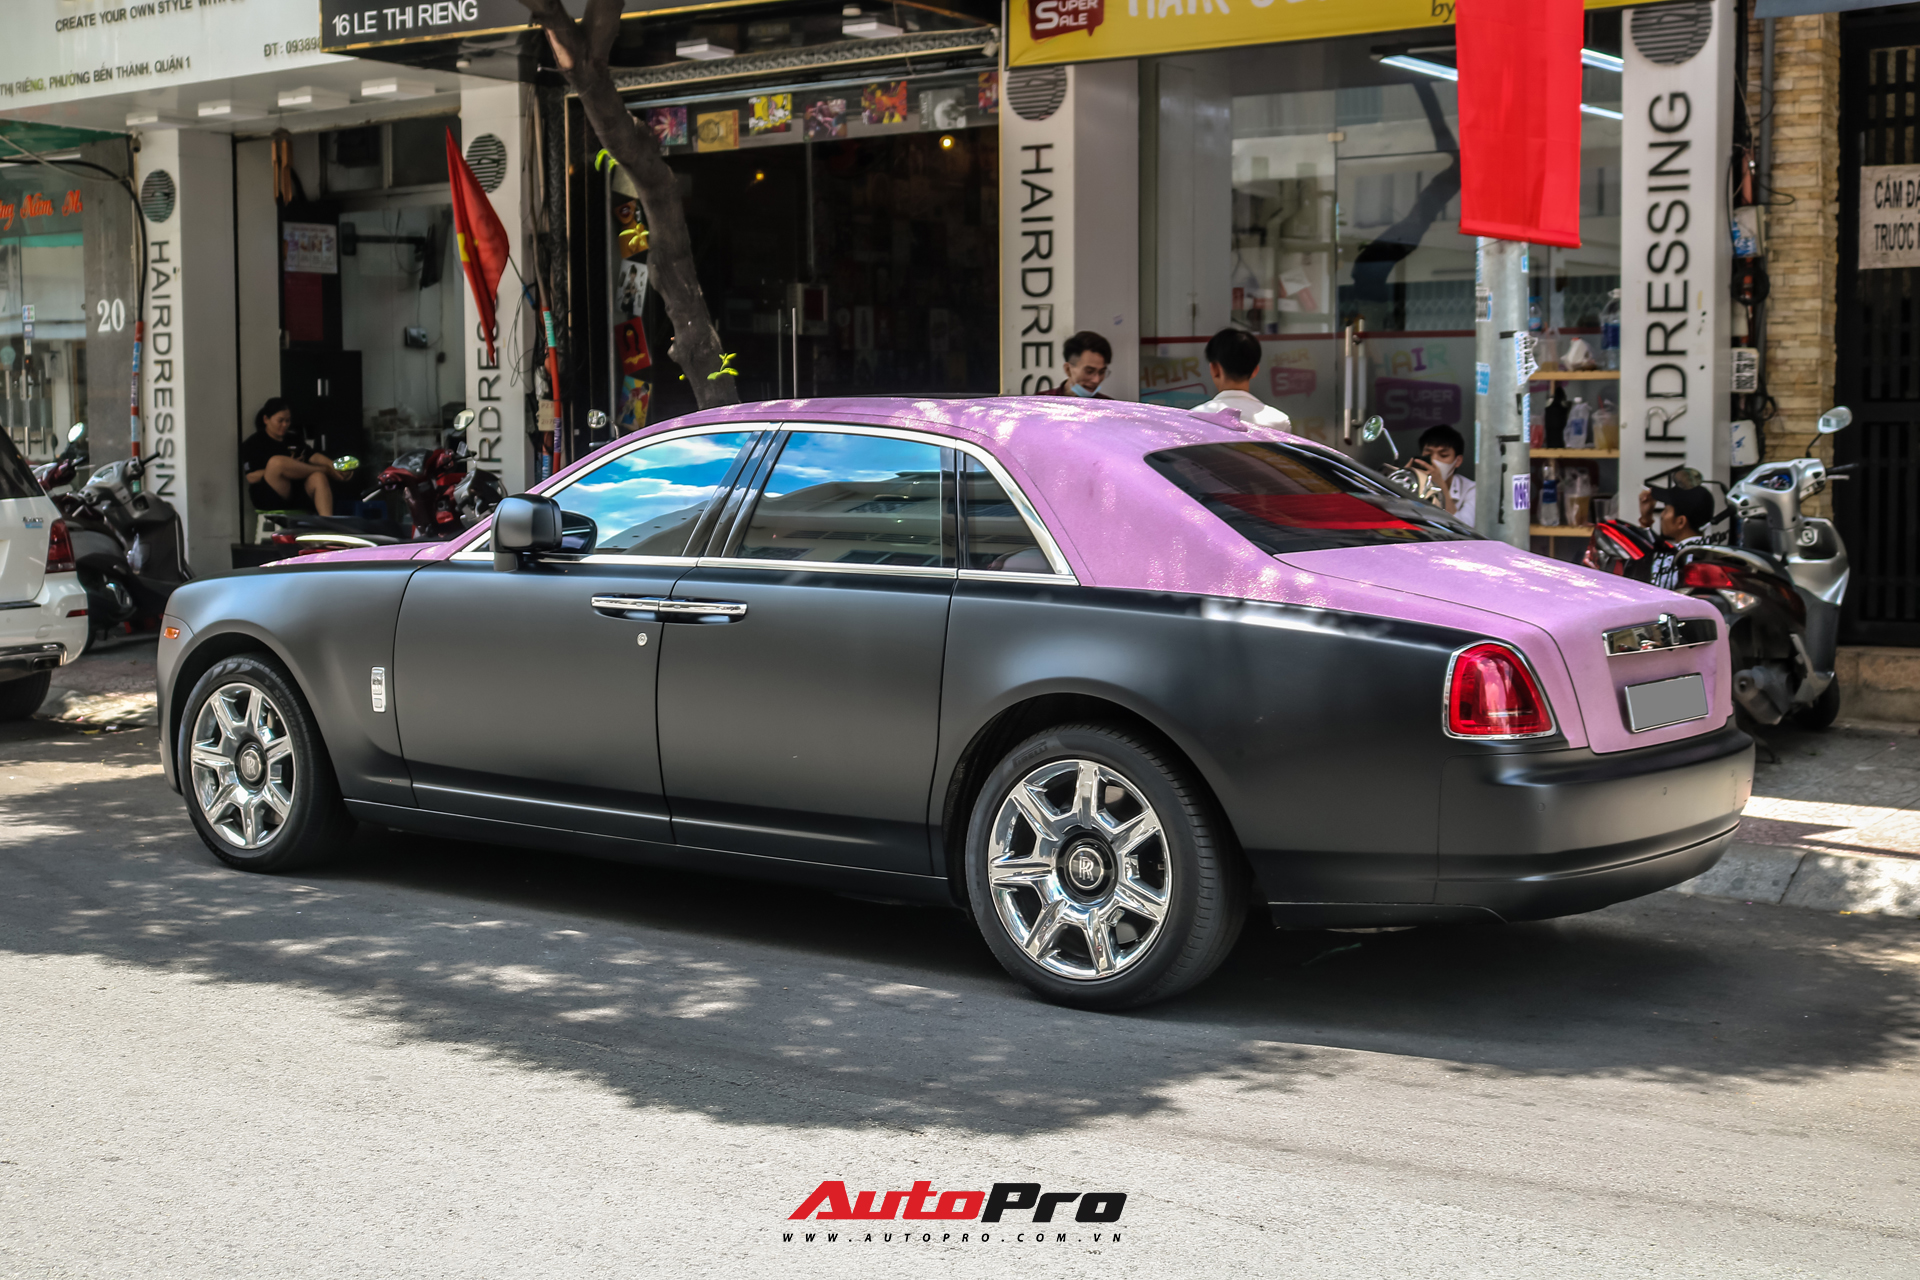 Mặc kệ drama, Ngọc Trinh mang Rolls-Royce Ghost bản Black Pink siêu độc lên phố chơi cuối tuần - Ảnh 9.